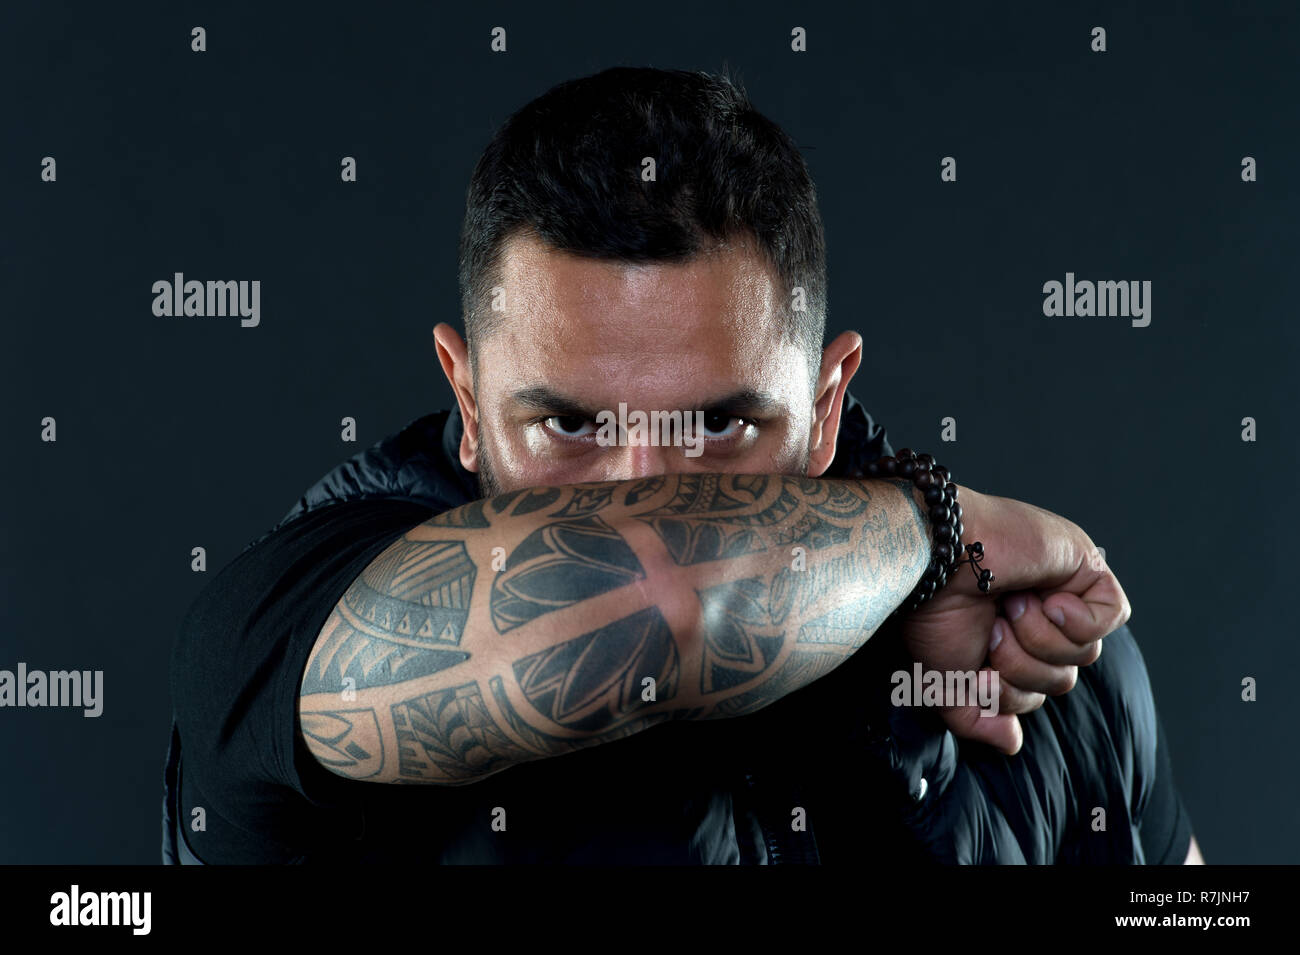 13 Mexican Tattoo Artists to Watch | Aztec tattoo designs, Mexican tattoo,  Aztec tattoo